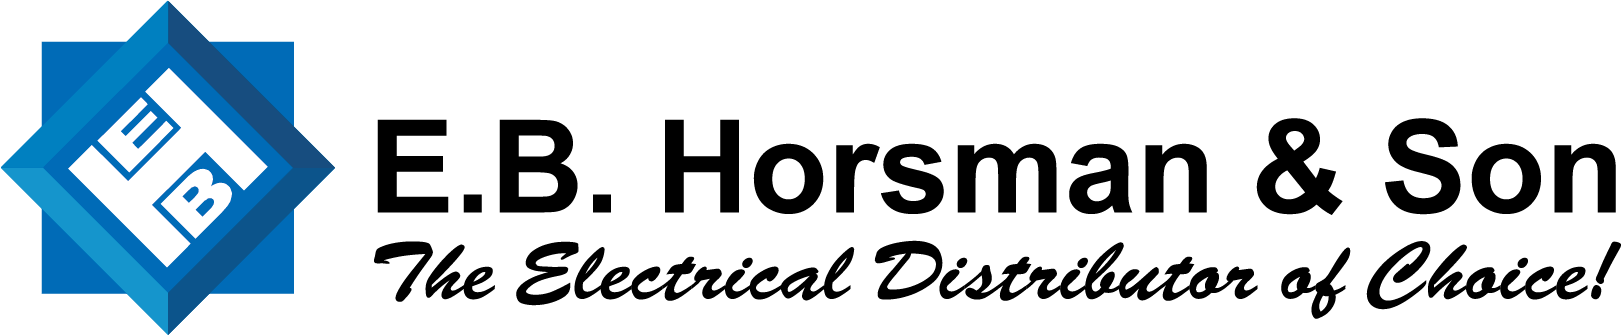 EBHorsman logo